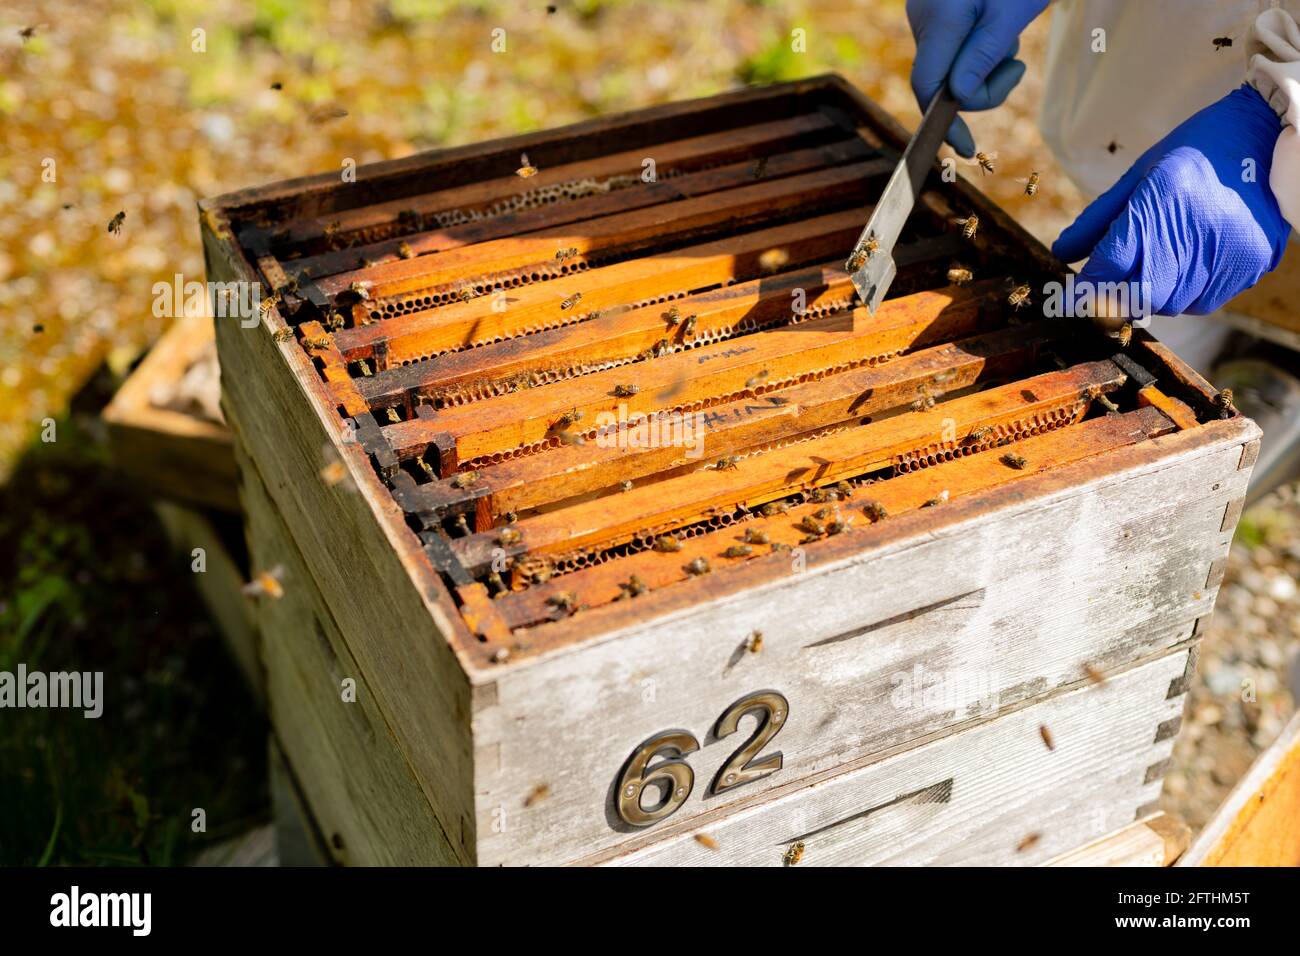 Apiculteur ouvrant une ruche, apiculant, ouvrant la ruche, vérifiant une ruche, inspection des abeilles Banque D'Images